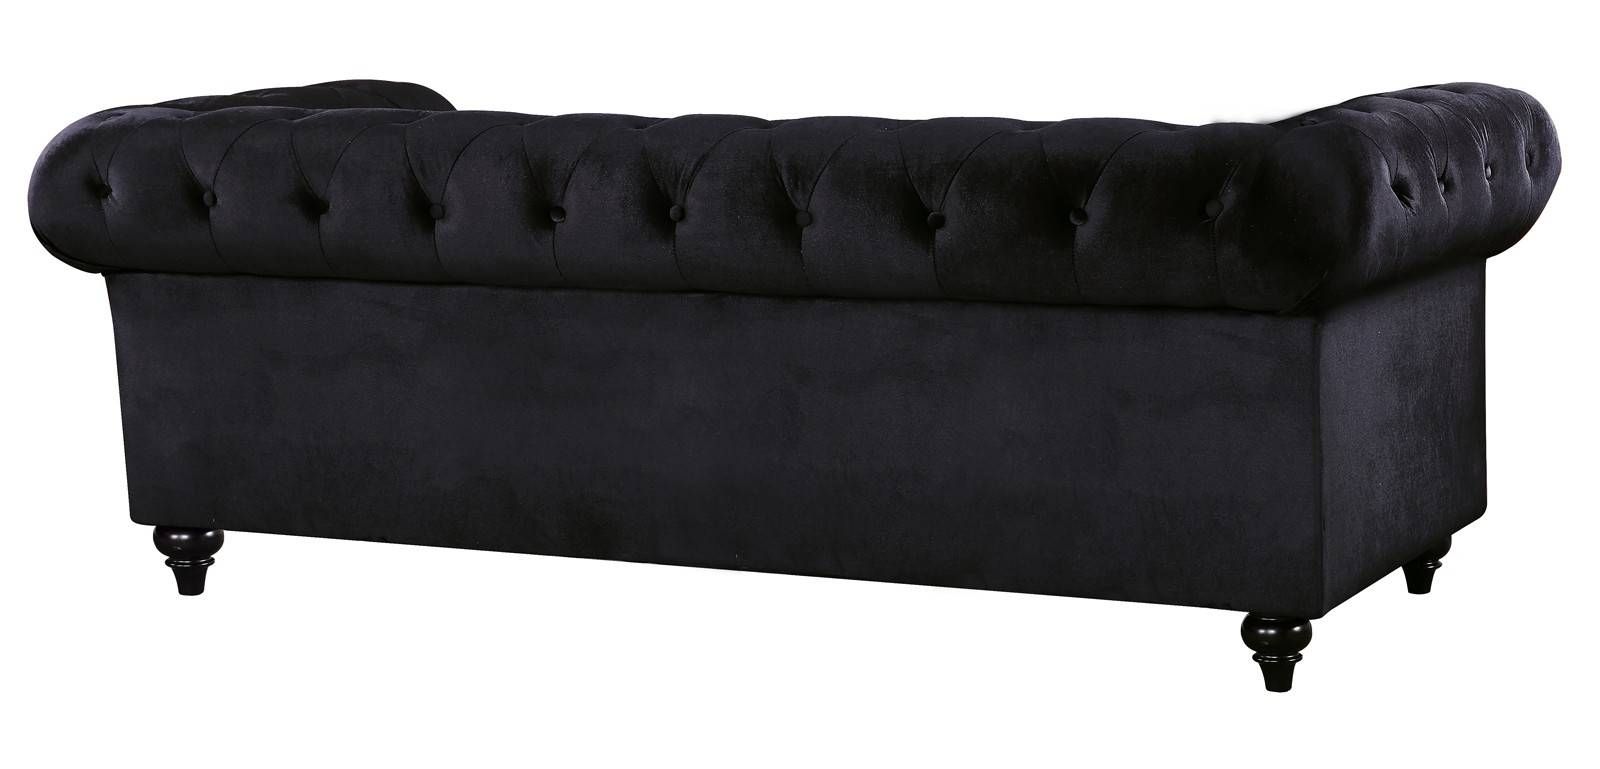 Meridian Chesterfield Velvet Sofa In Black 662bl S Intended For Chesterfield Black Sofas (Photo 13 of 30)